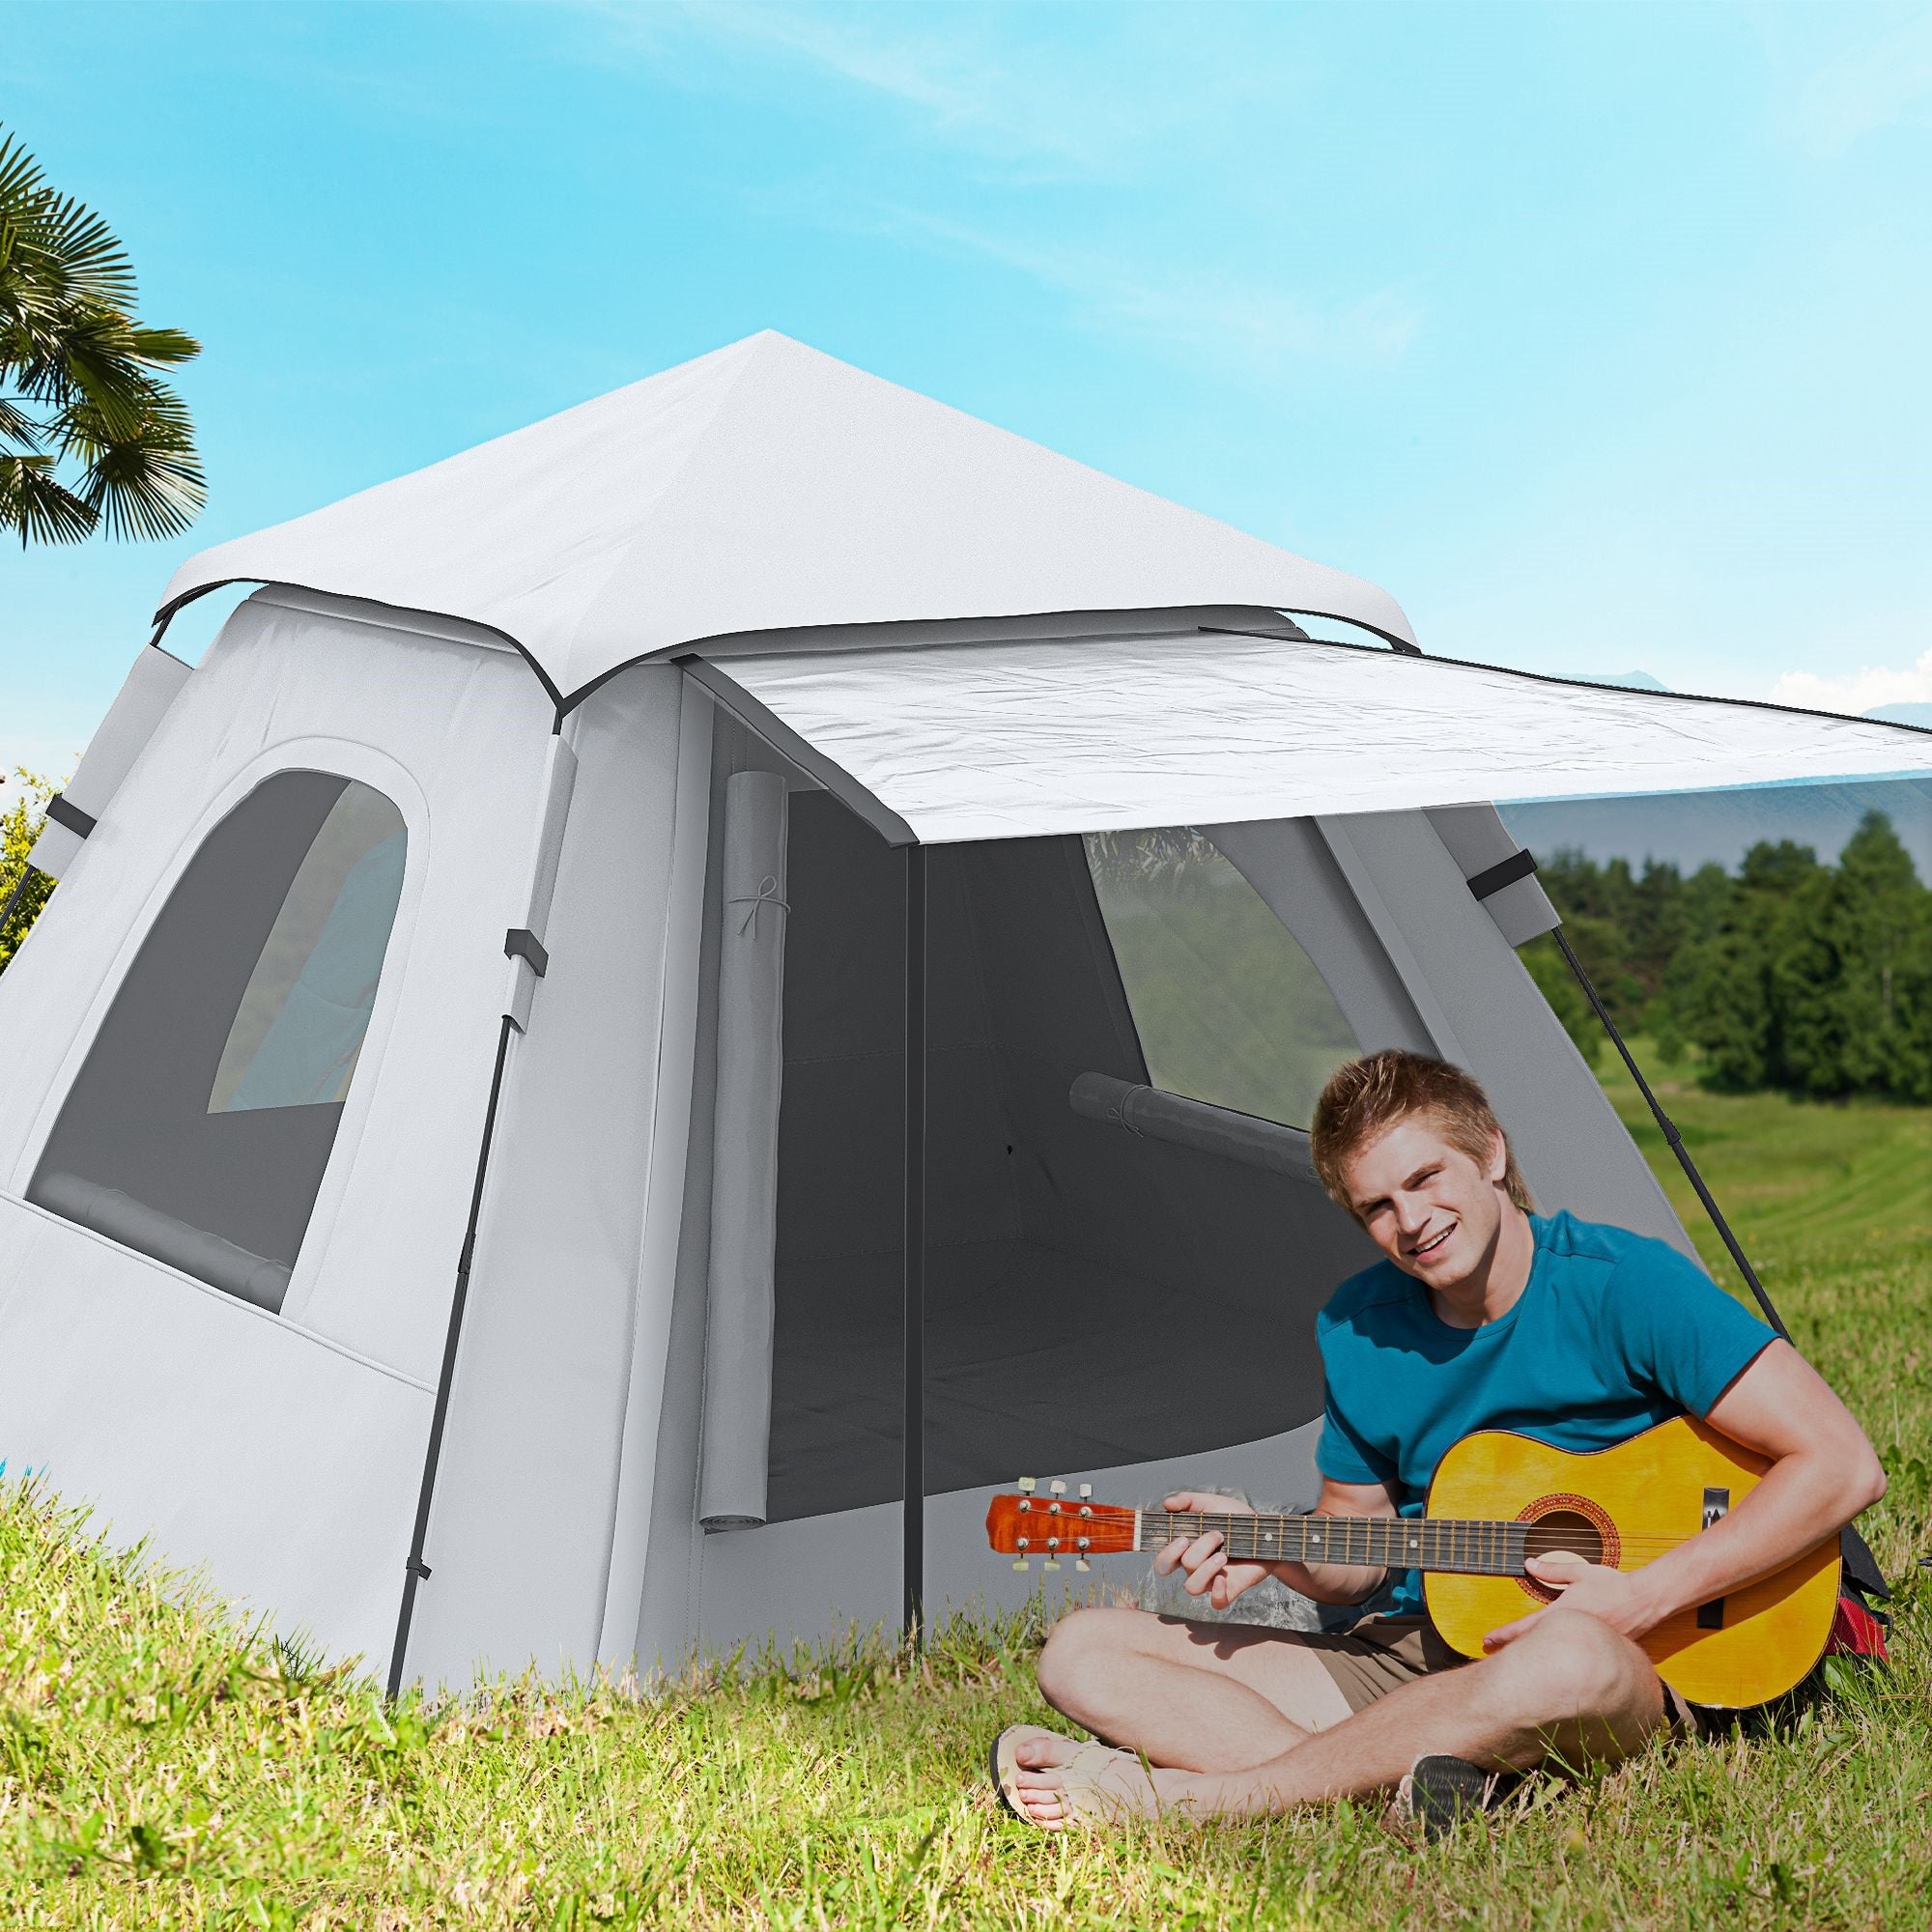 EASYCOMFORT Tenda da campeggio da 2-3 persone con Veranda, 210x210x150cm,  grigia e bianca